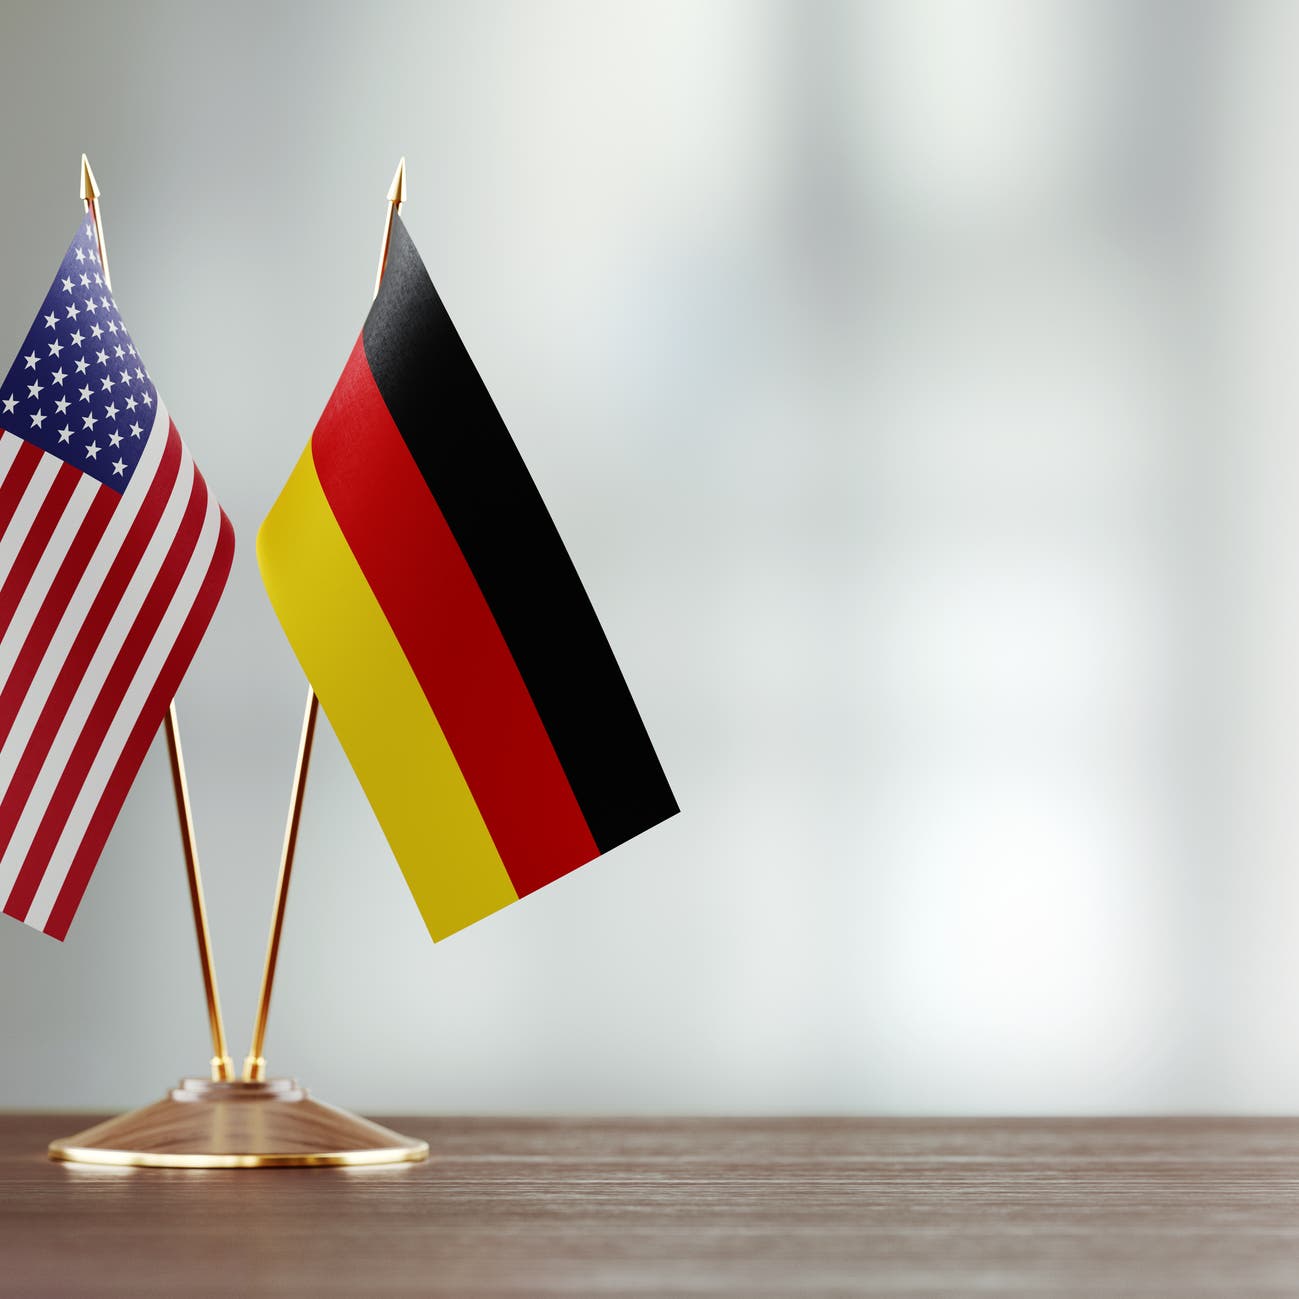 ألمانيا: لم نبلغ رسميا بقرار الانسحاب الأميركي